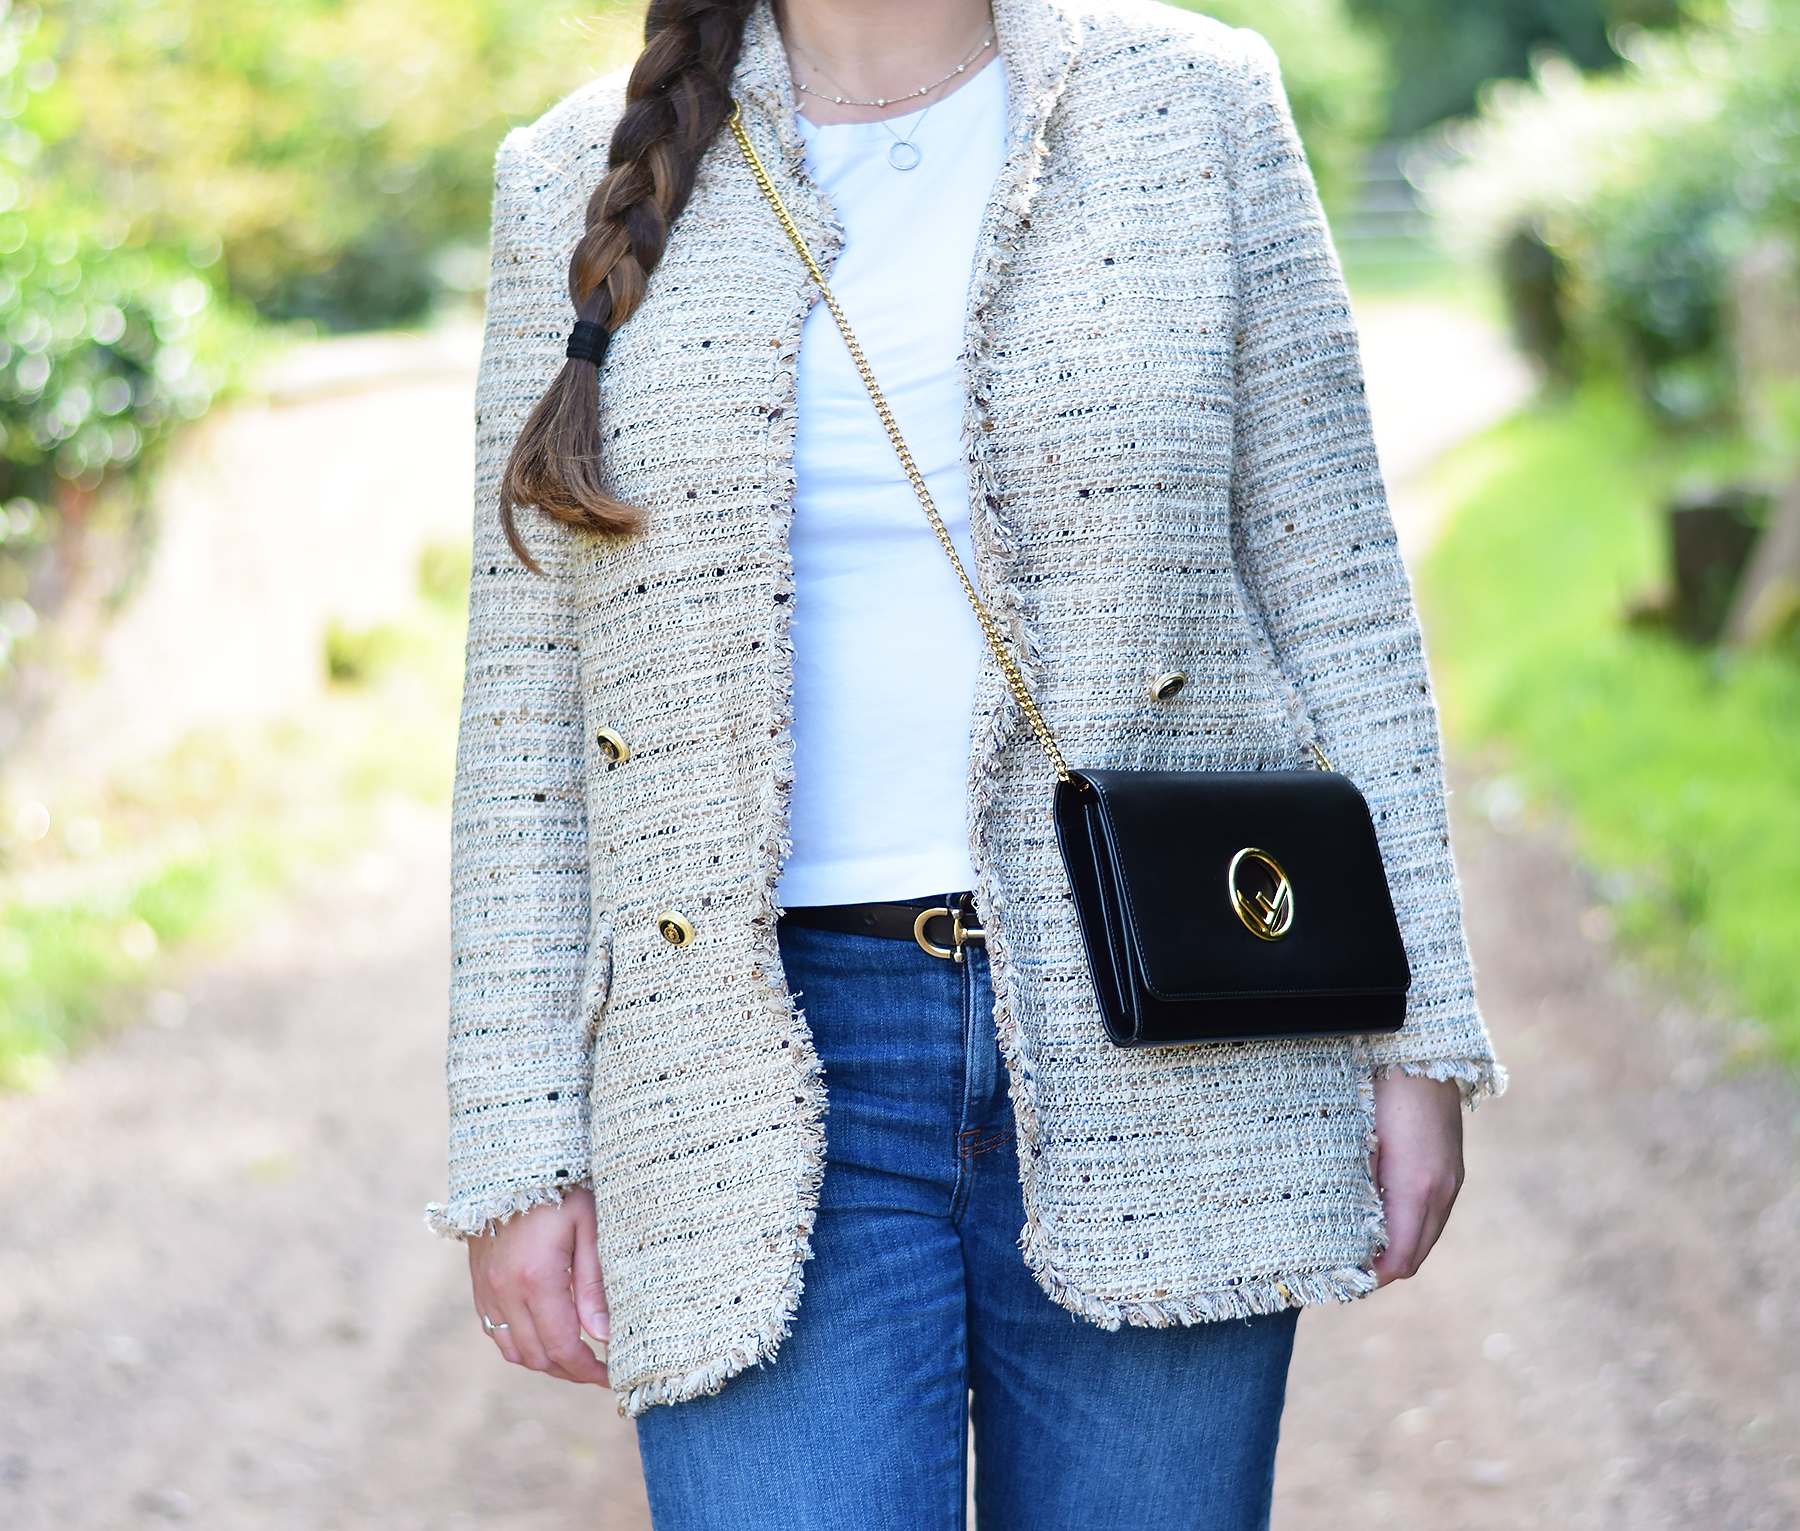 Zara Beige Tweed Blazer Outfit With Fendi Kan I Crossbody Bag